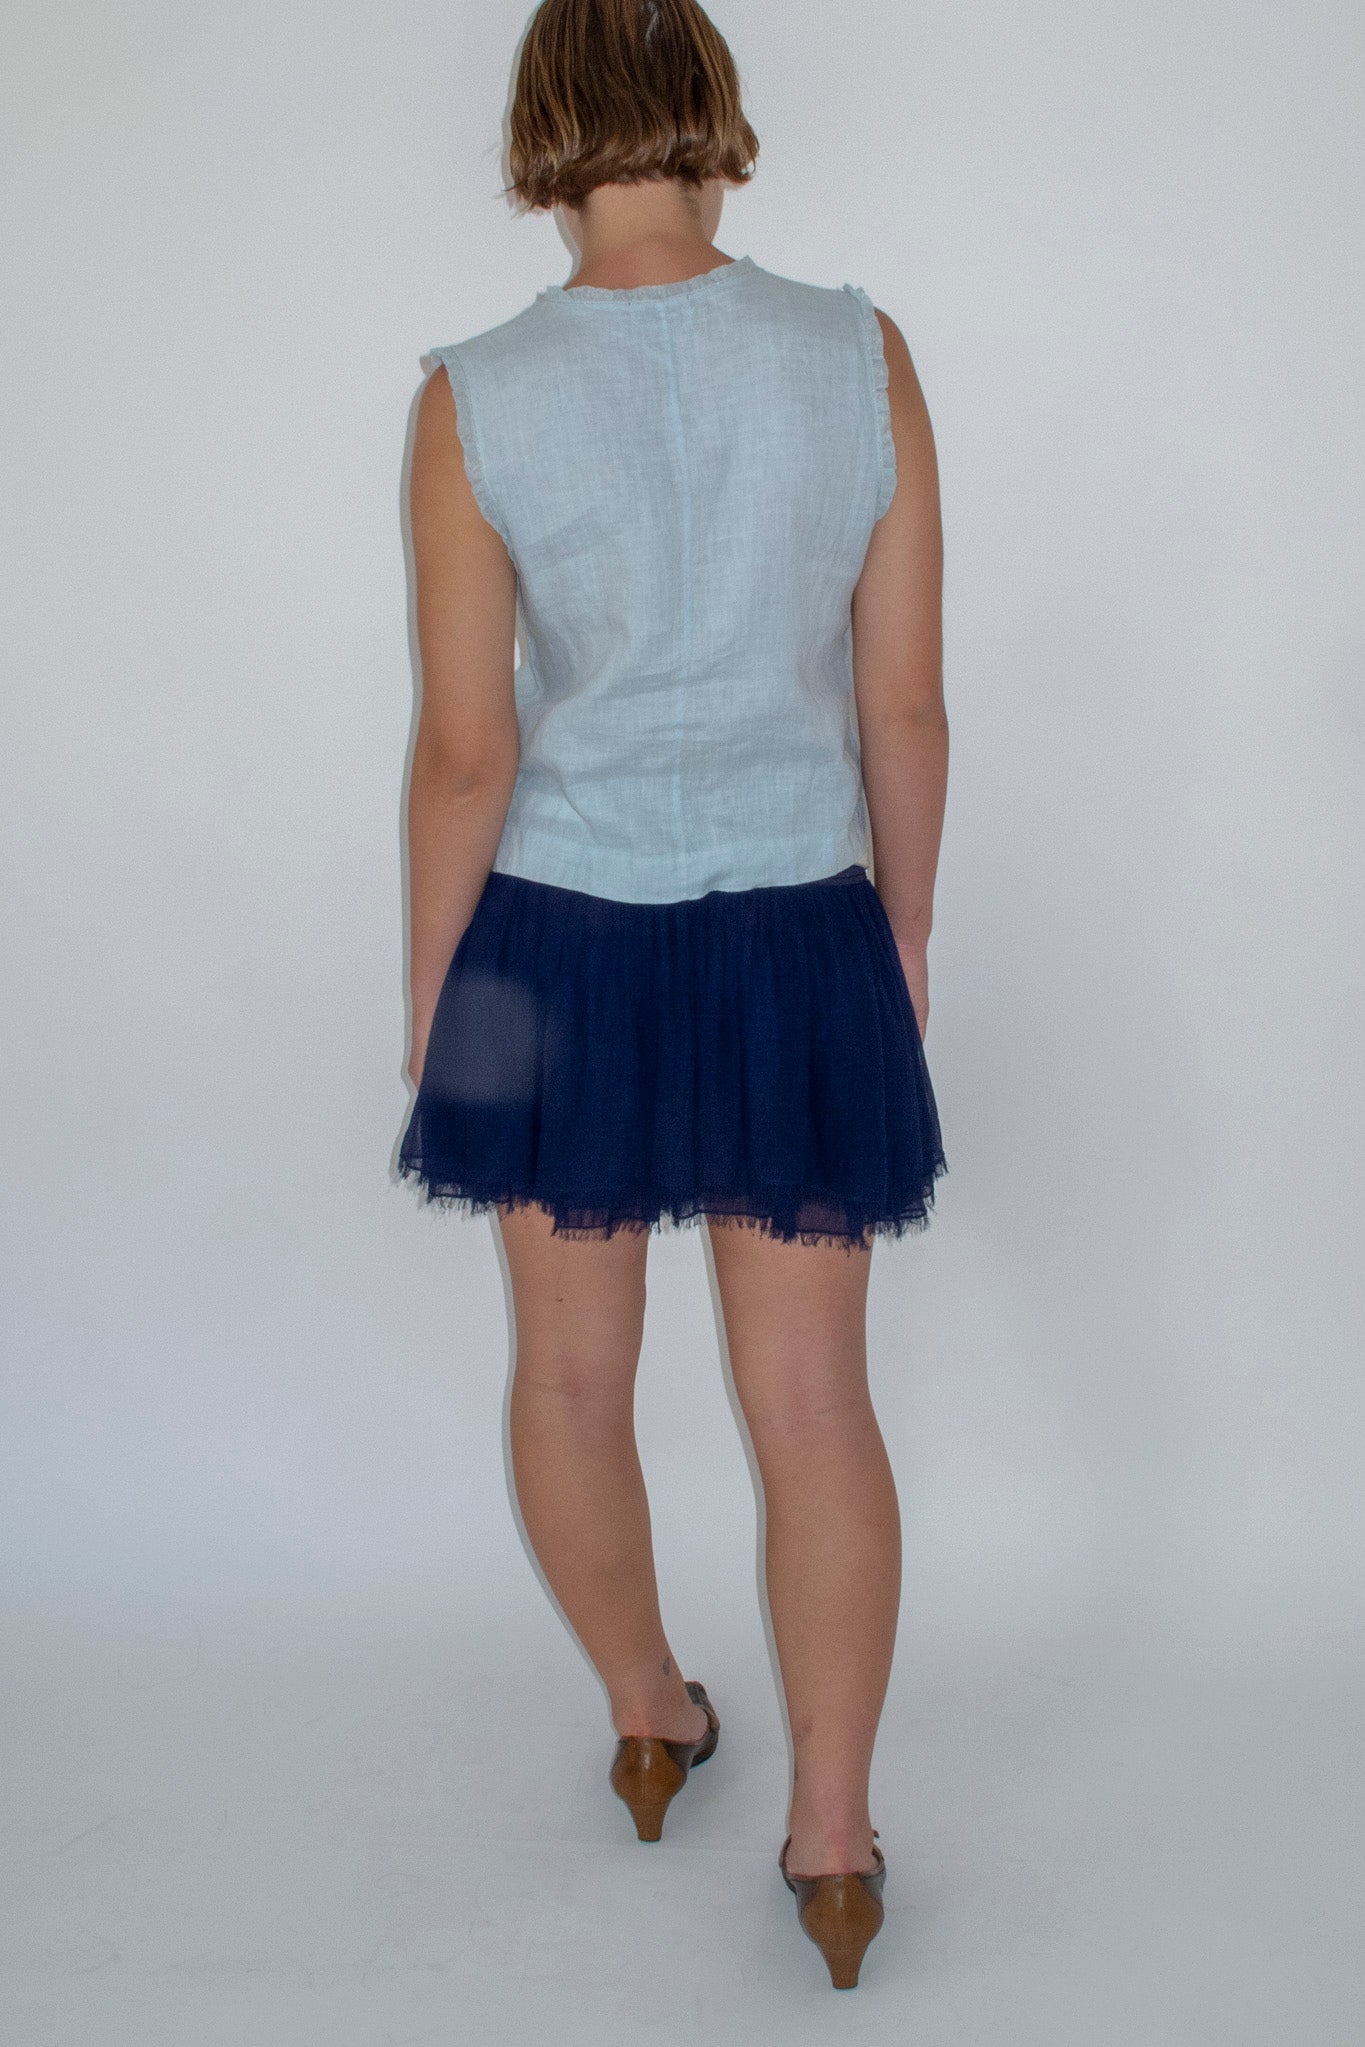 Armani Chiffon Blue Skirt